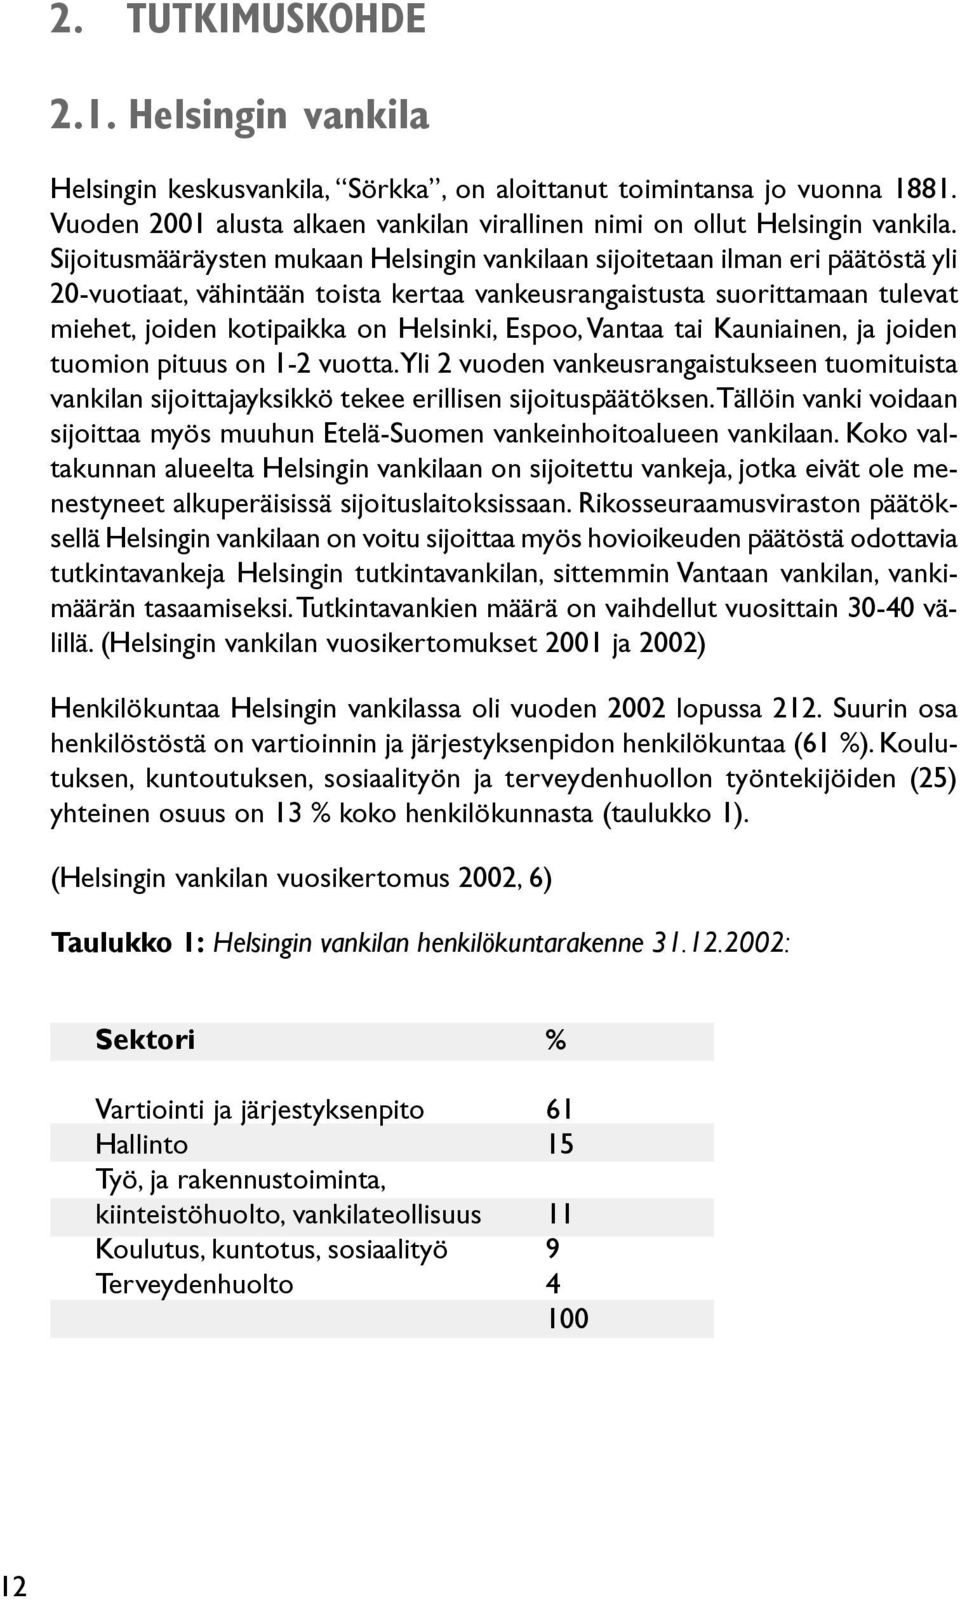 Espoo, Vantaa tai Kauniainen, ja joiden tuomion pituus on 1-2 vuotta. Yli 2 vuoden vankeusrangaistukseen tuomituista vankilan sijoittajayksikkö tekee erillisen sijoituspäätöksen.